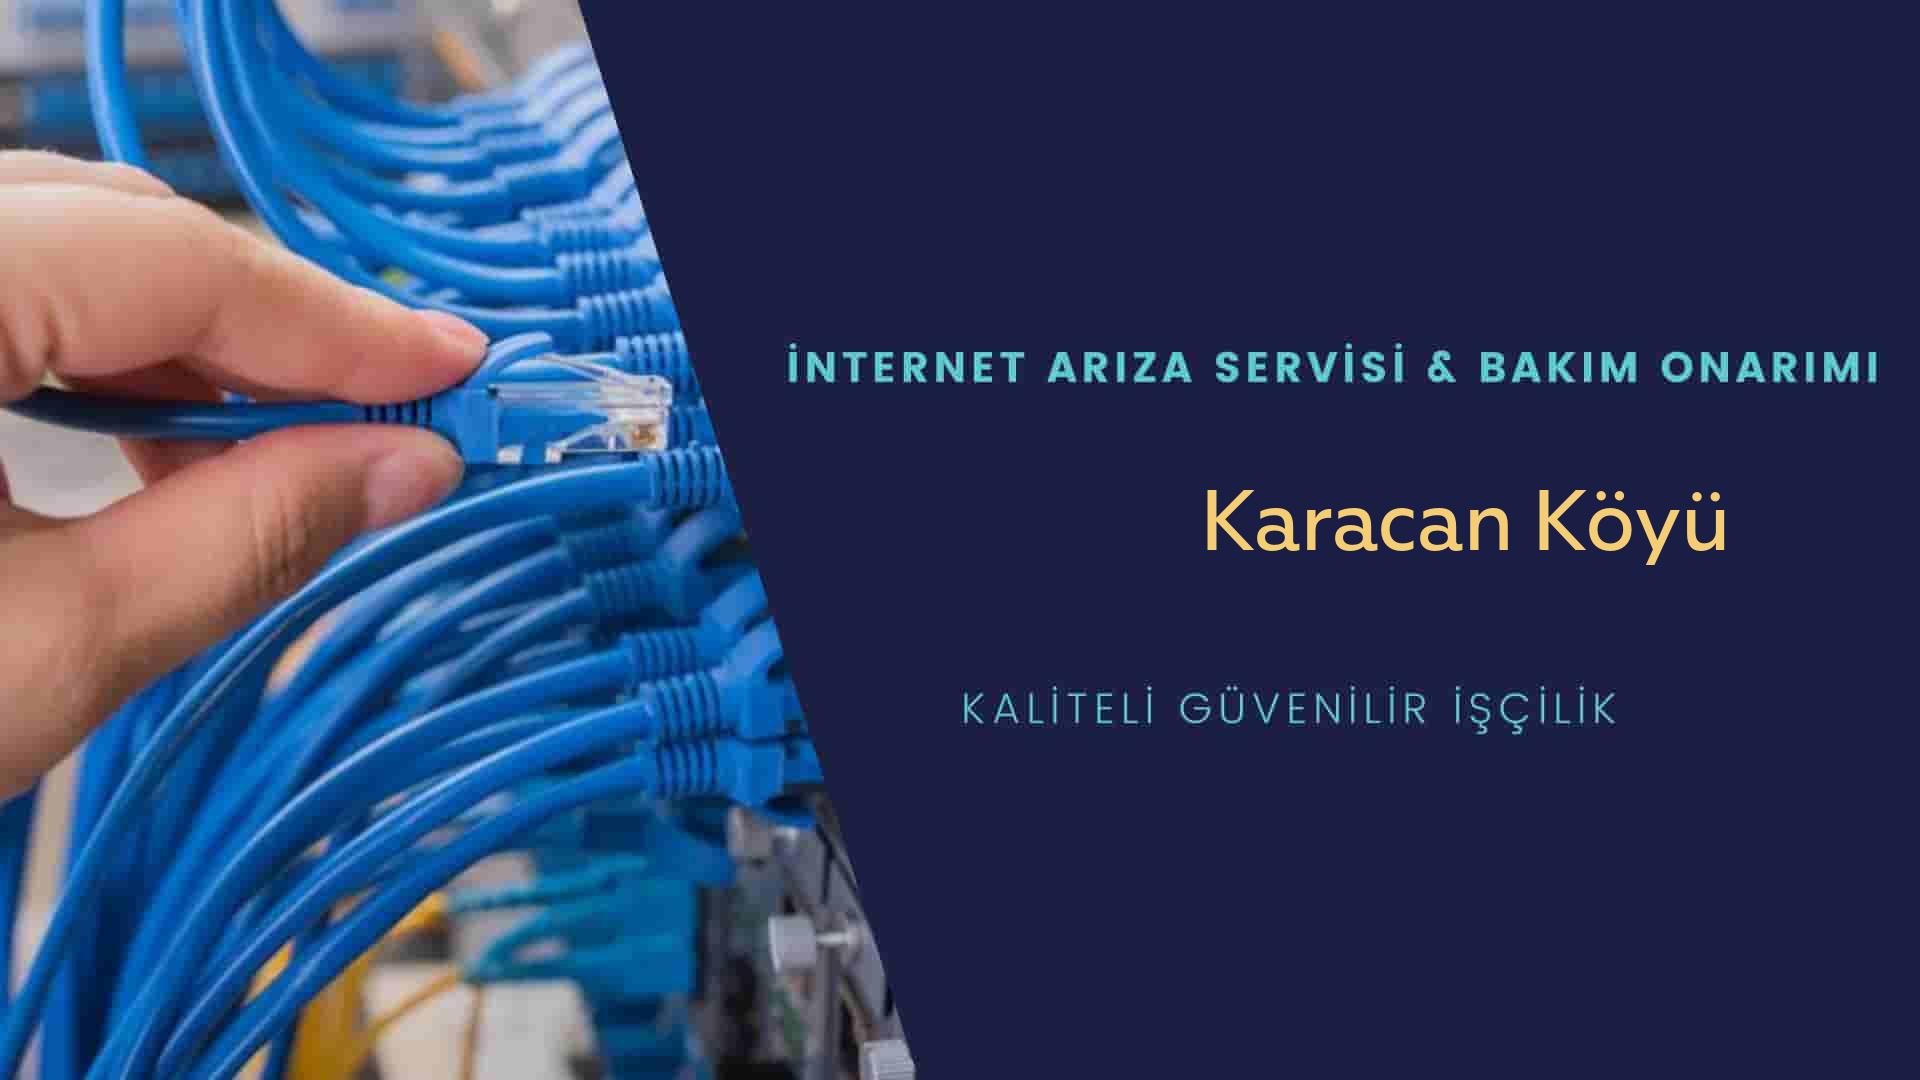 Karacan Köyü internet kablosu çekimi yapan yerler veya elektrikçiler mi? arıyorsunuz doğru yerdesiniz o zaman sizlere 7/24 yardımcı olacak profesyonel ustalarımız bir telefon kadar yakındır size.